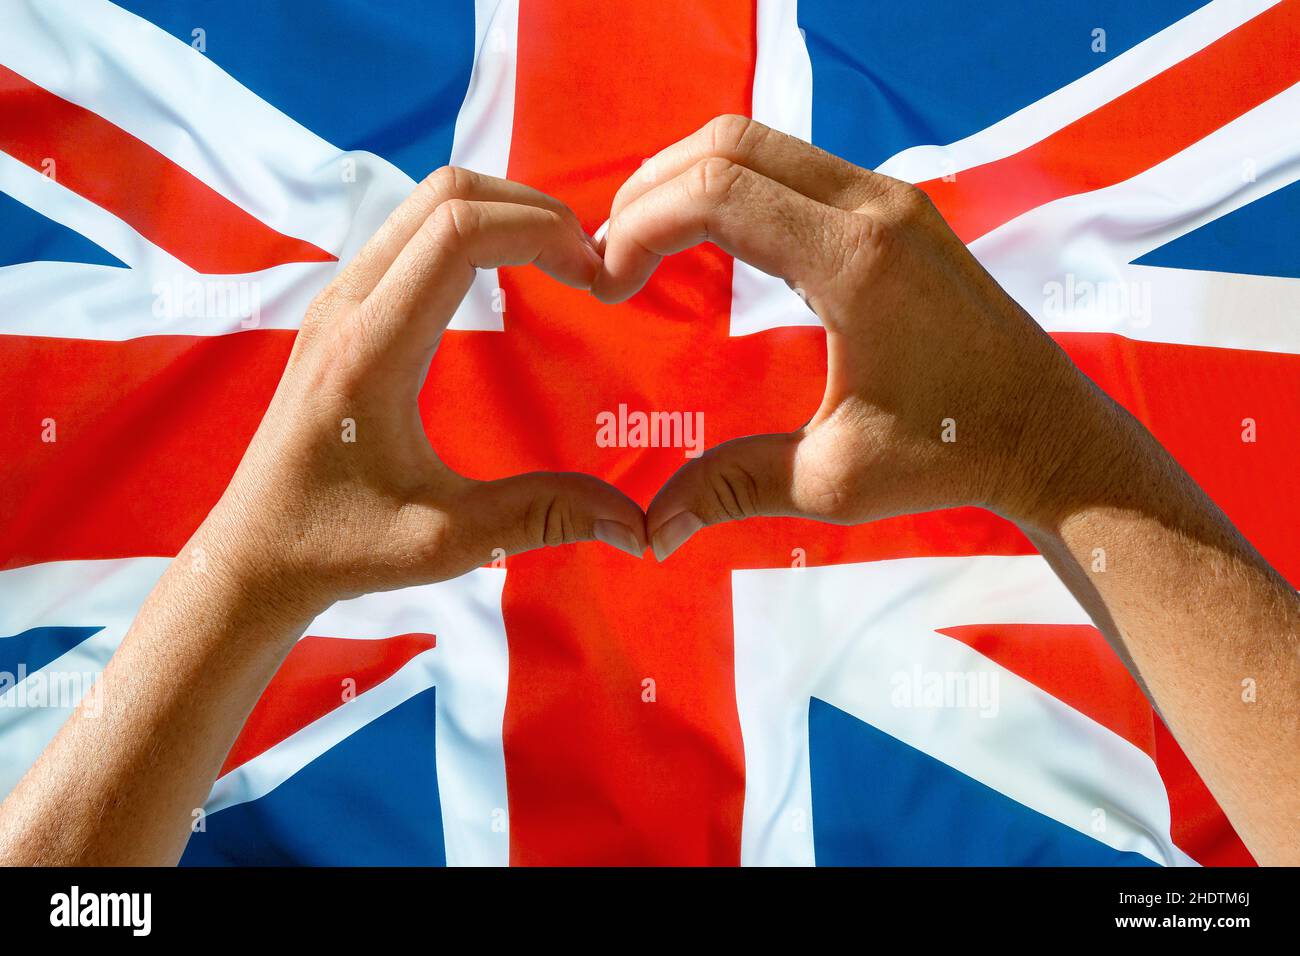 uk, great britain Stock Photo